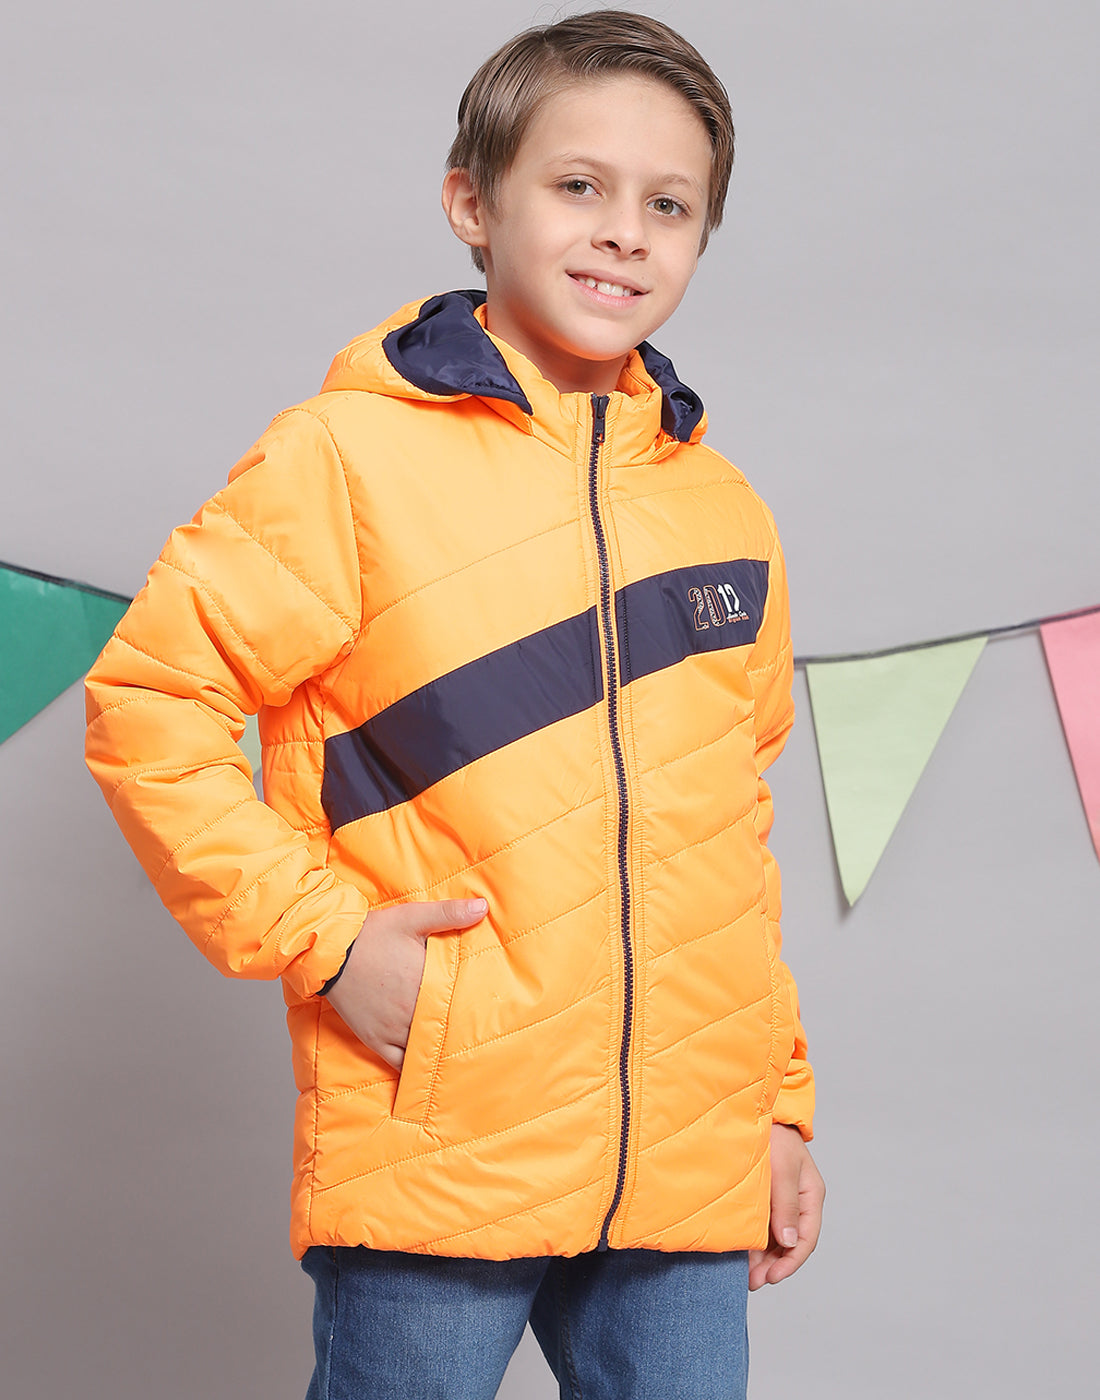 Boys Orange Solid Hooded Full Sleeve Boys Jacket